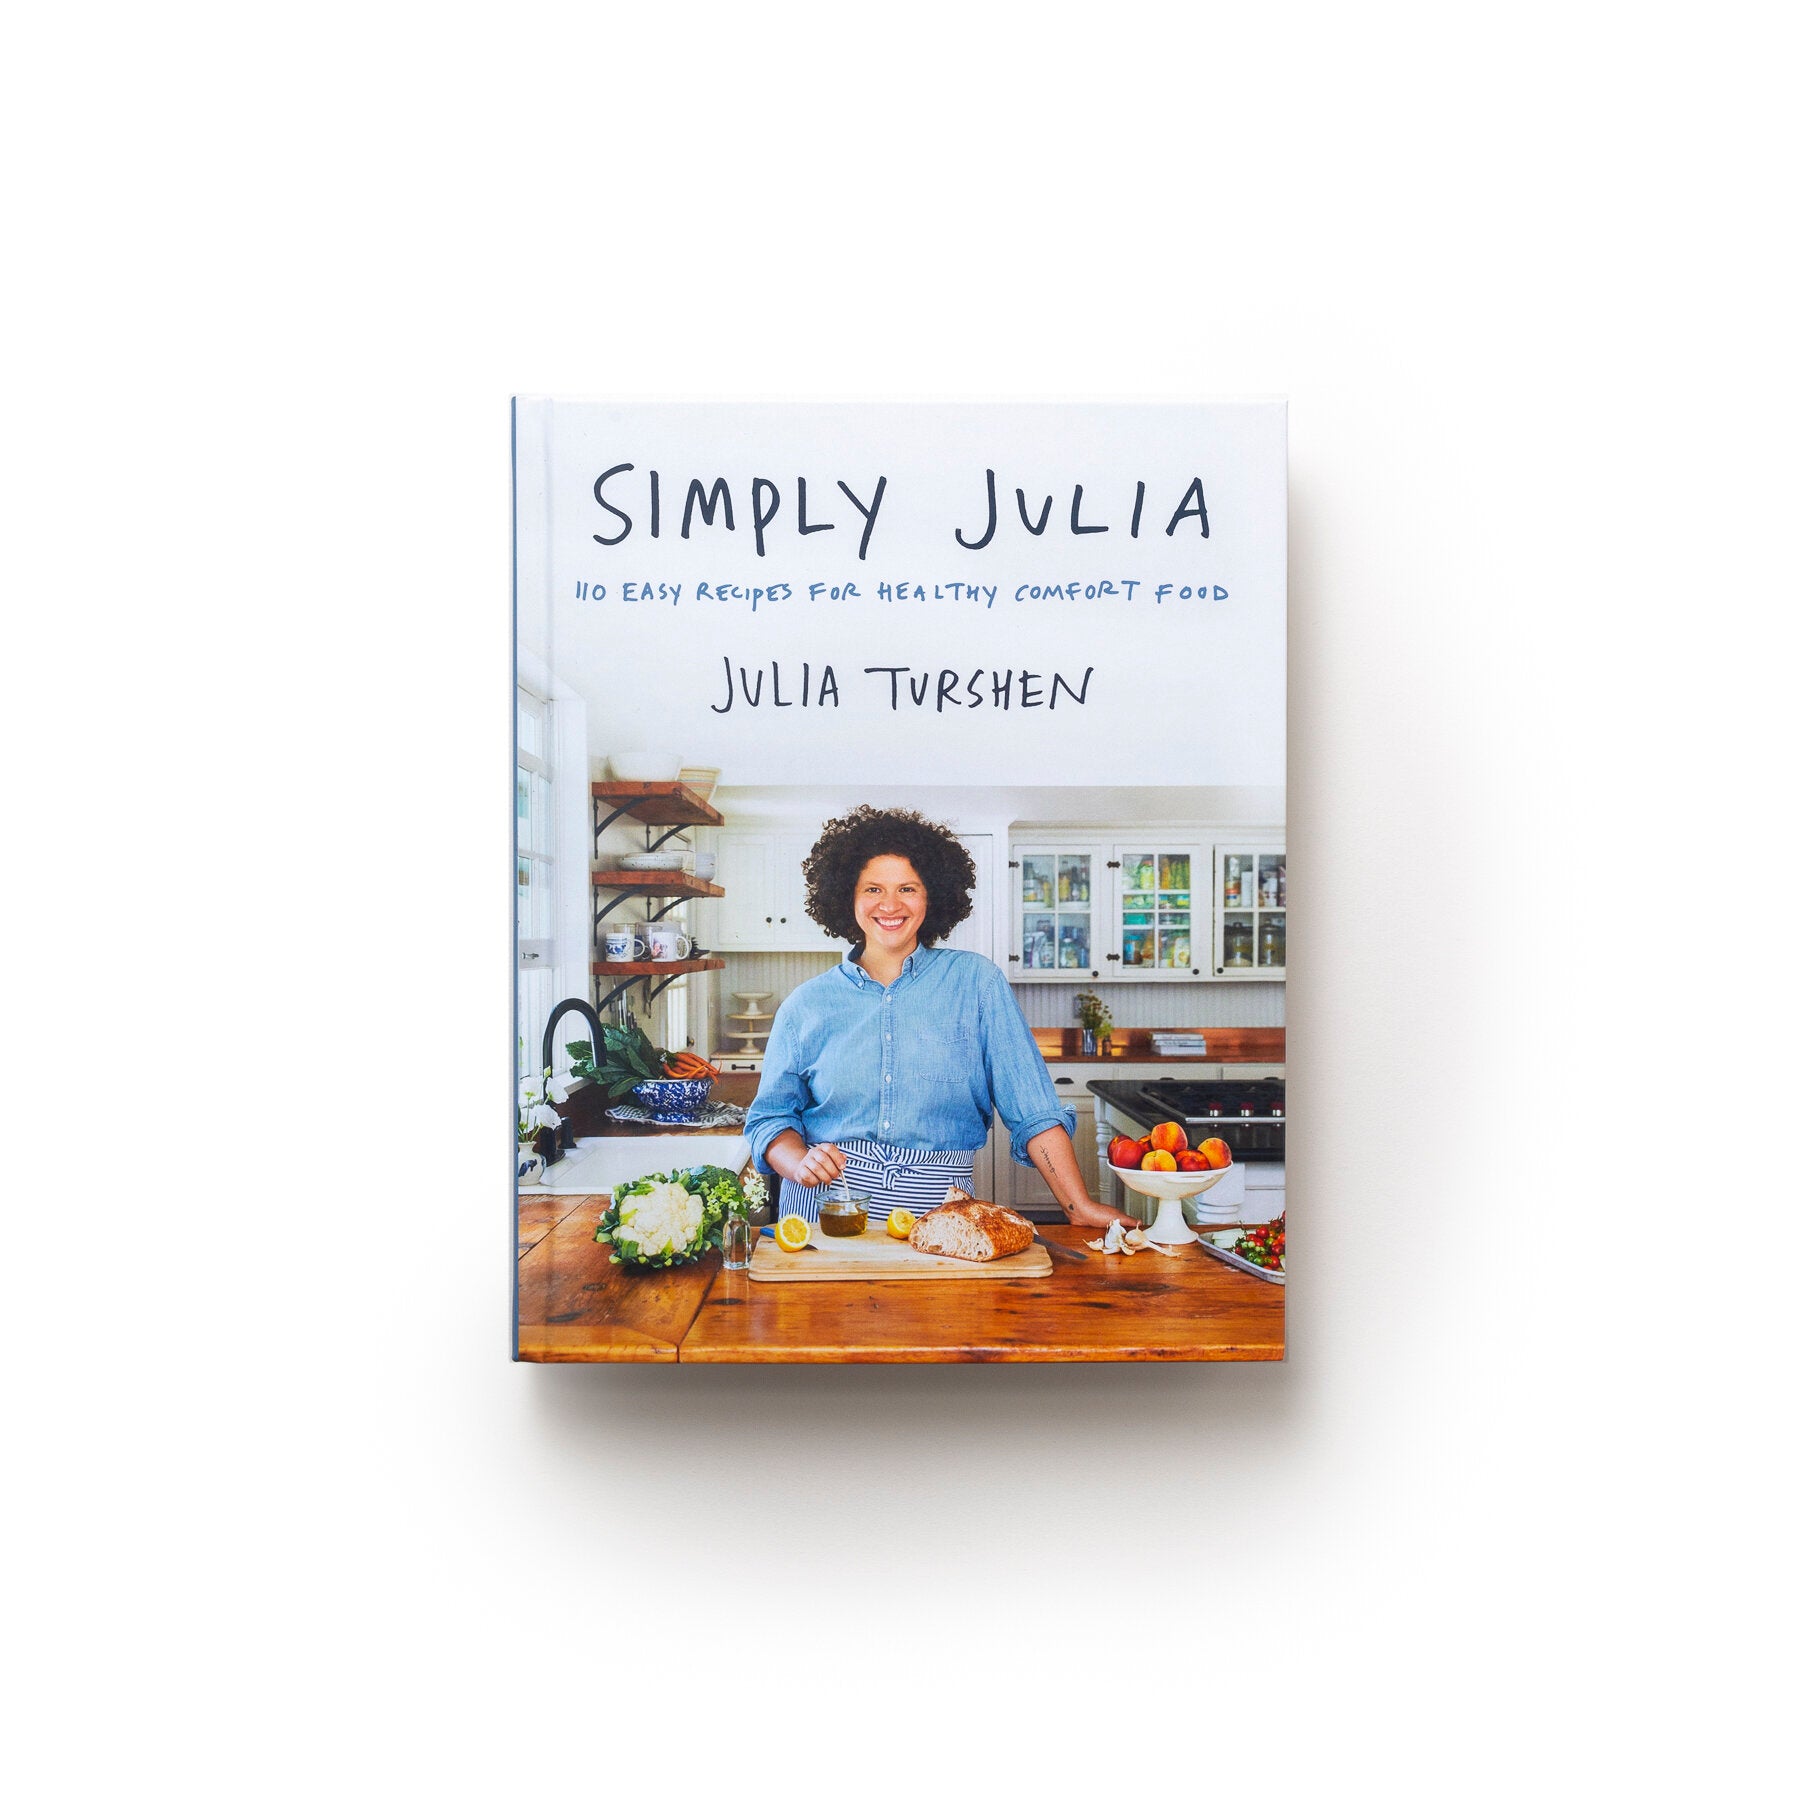 Simply Julia by Julia Turshen